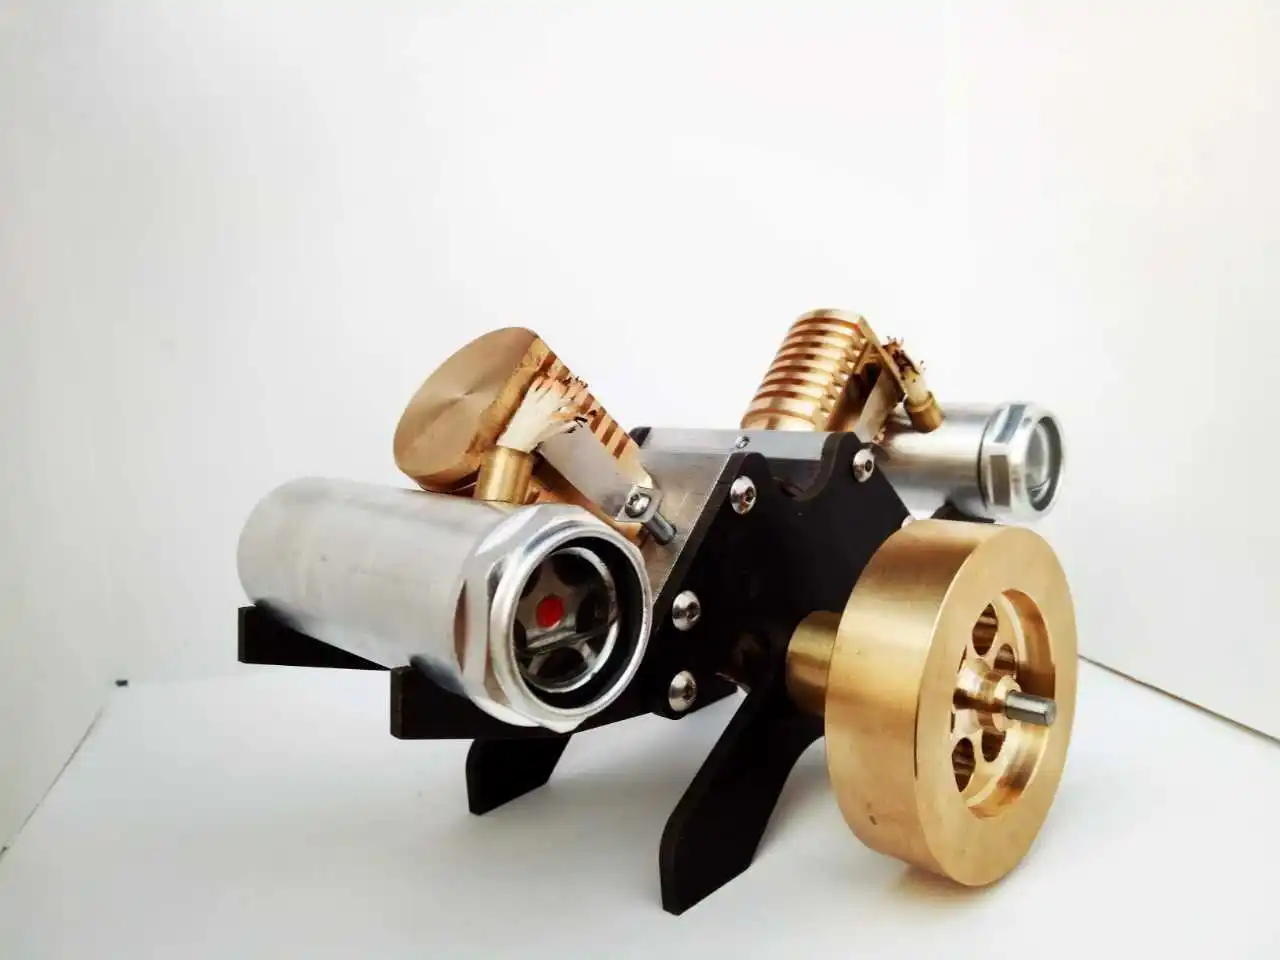 V2 вдохновляющий двигатель, мини-модель двигателя Стирлинга, вакуумный двигатель, креативный подарок на день рождения